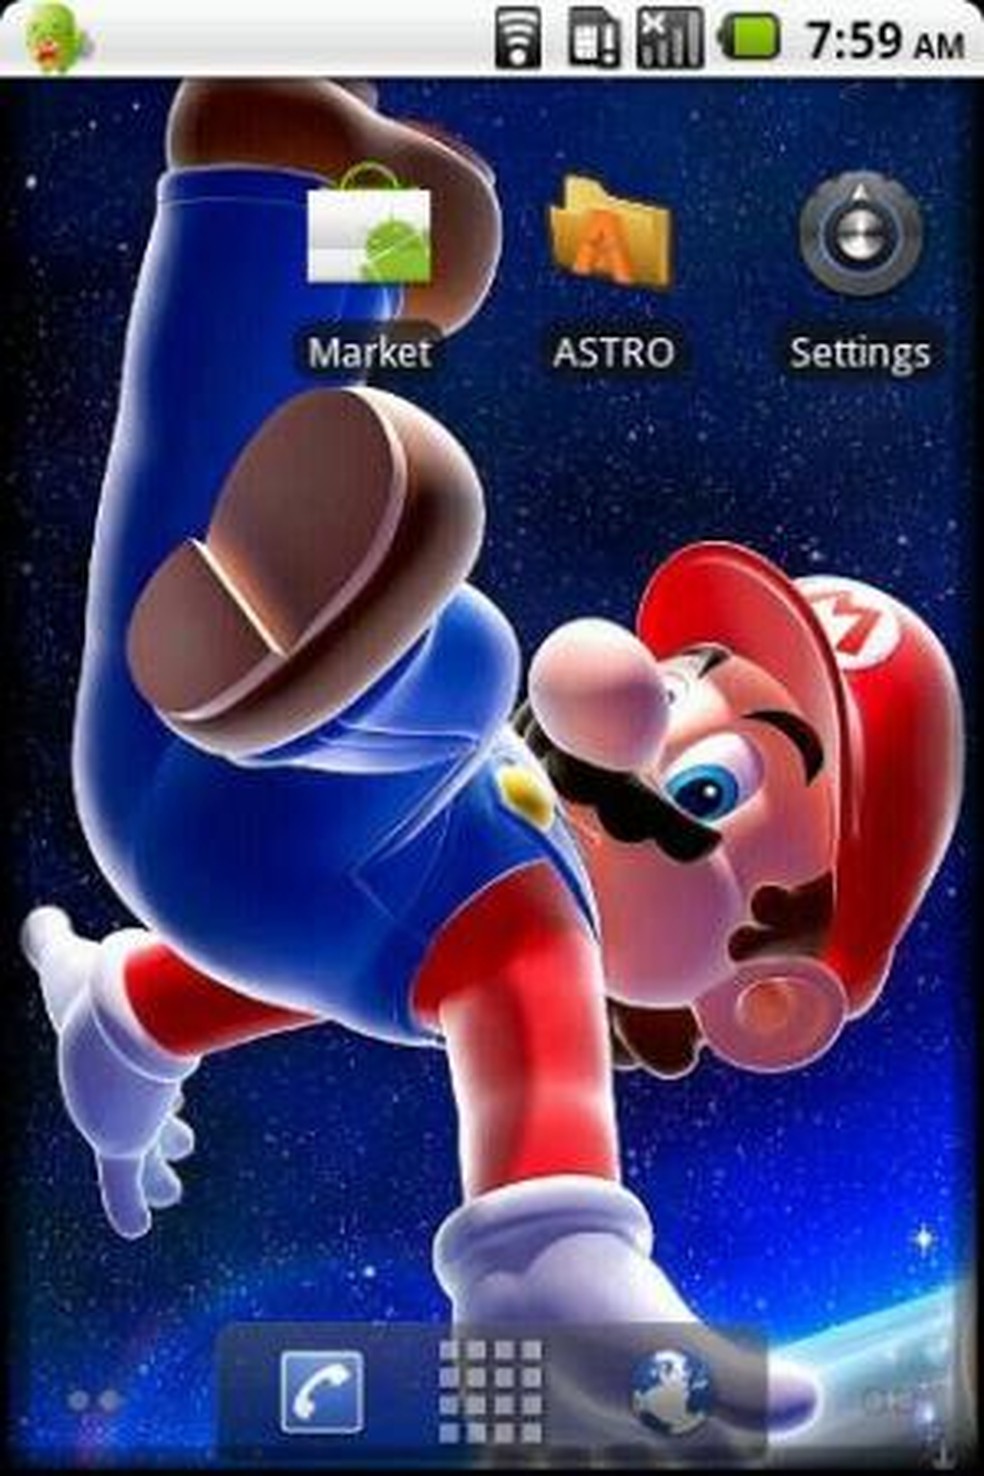 Super Mario invade o Android: aprenda a personalizar seu